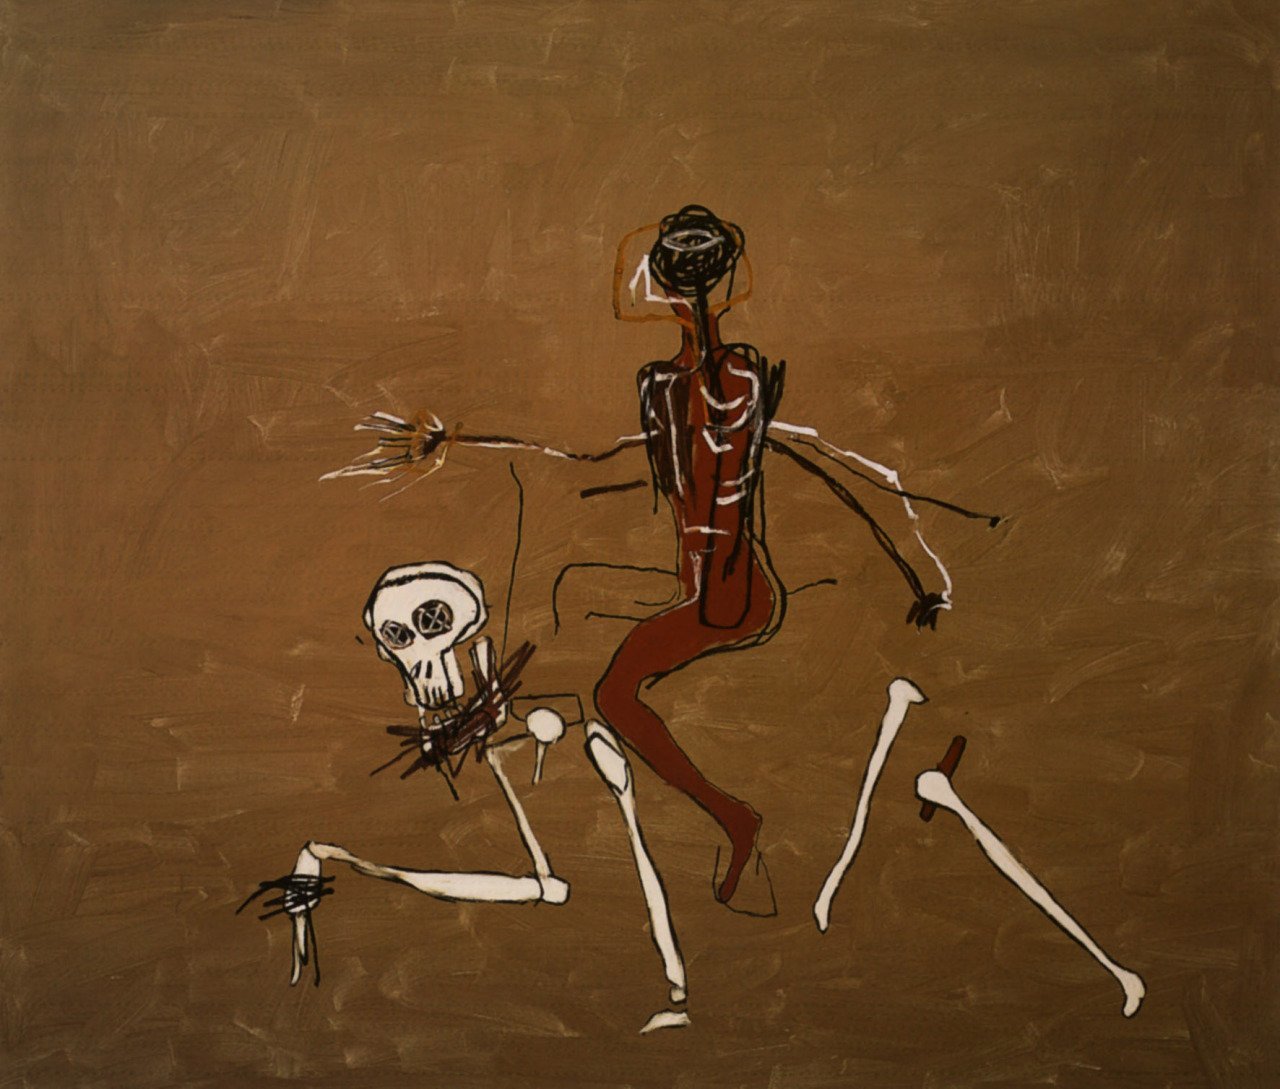 Jean-Michel Basquiat - "Riding with Dead" (1988) via @Brindille_  #art #painting #arte https://t.co/fm18sv9T2b